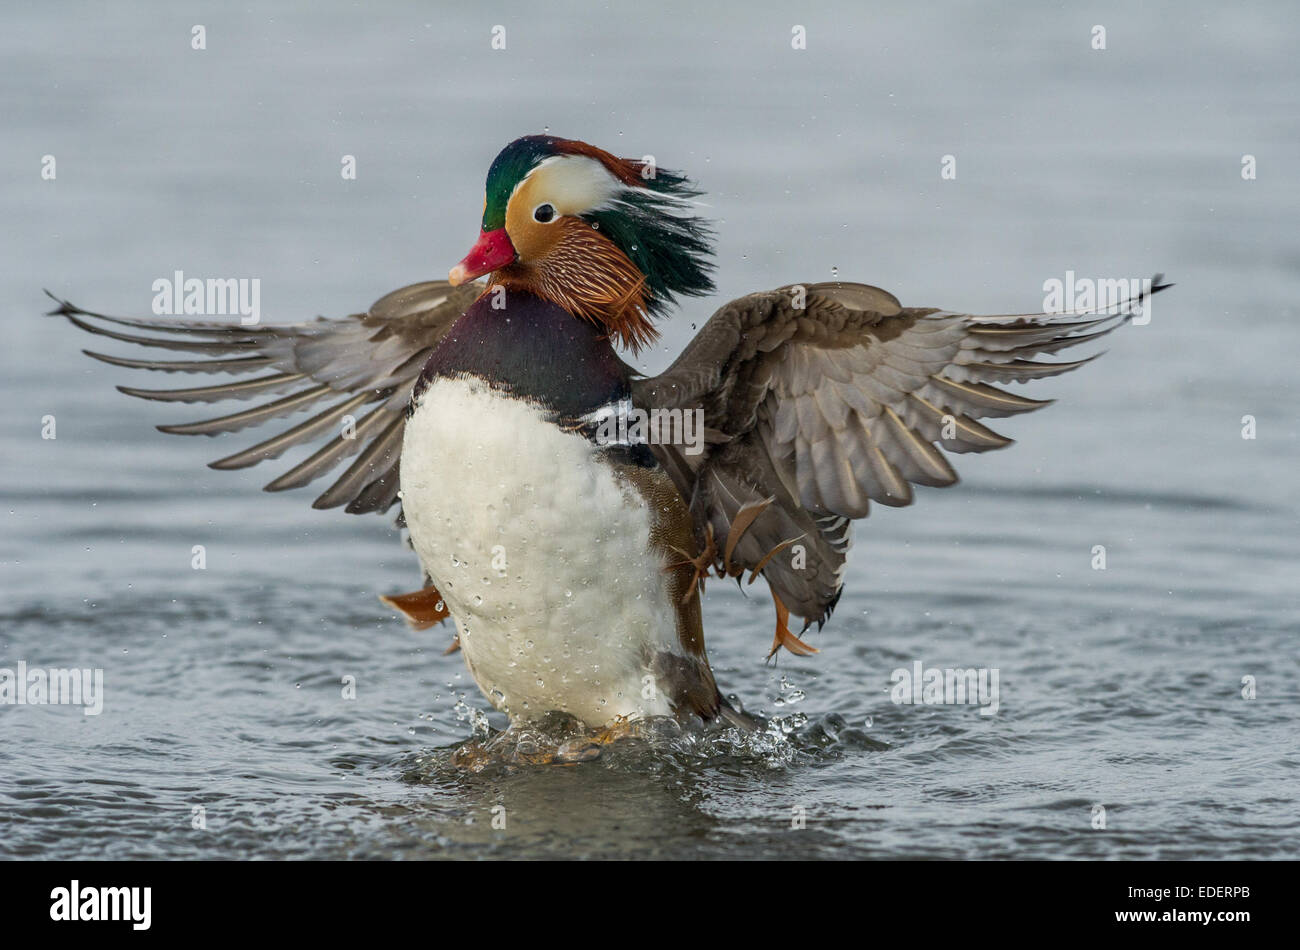 New-look Ducks spread their wings 